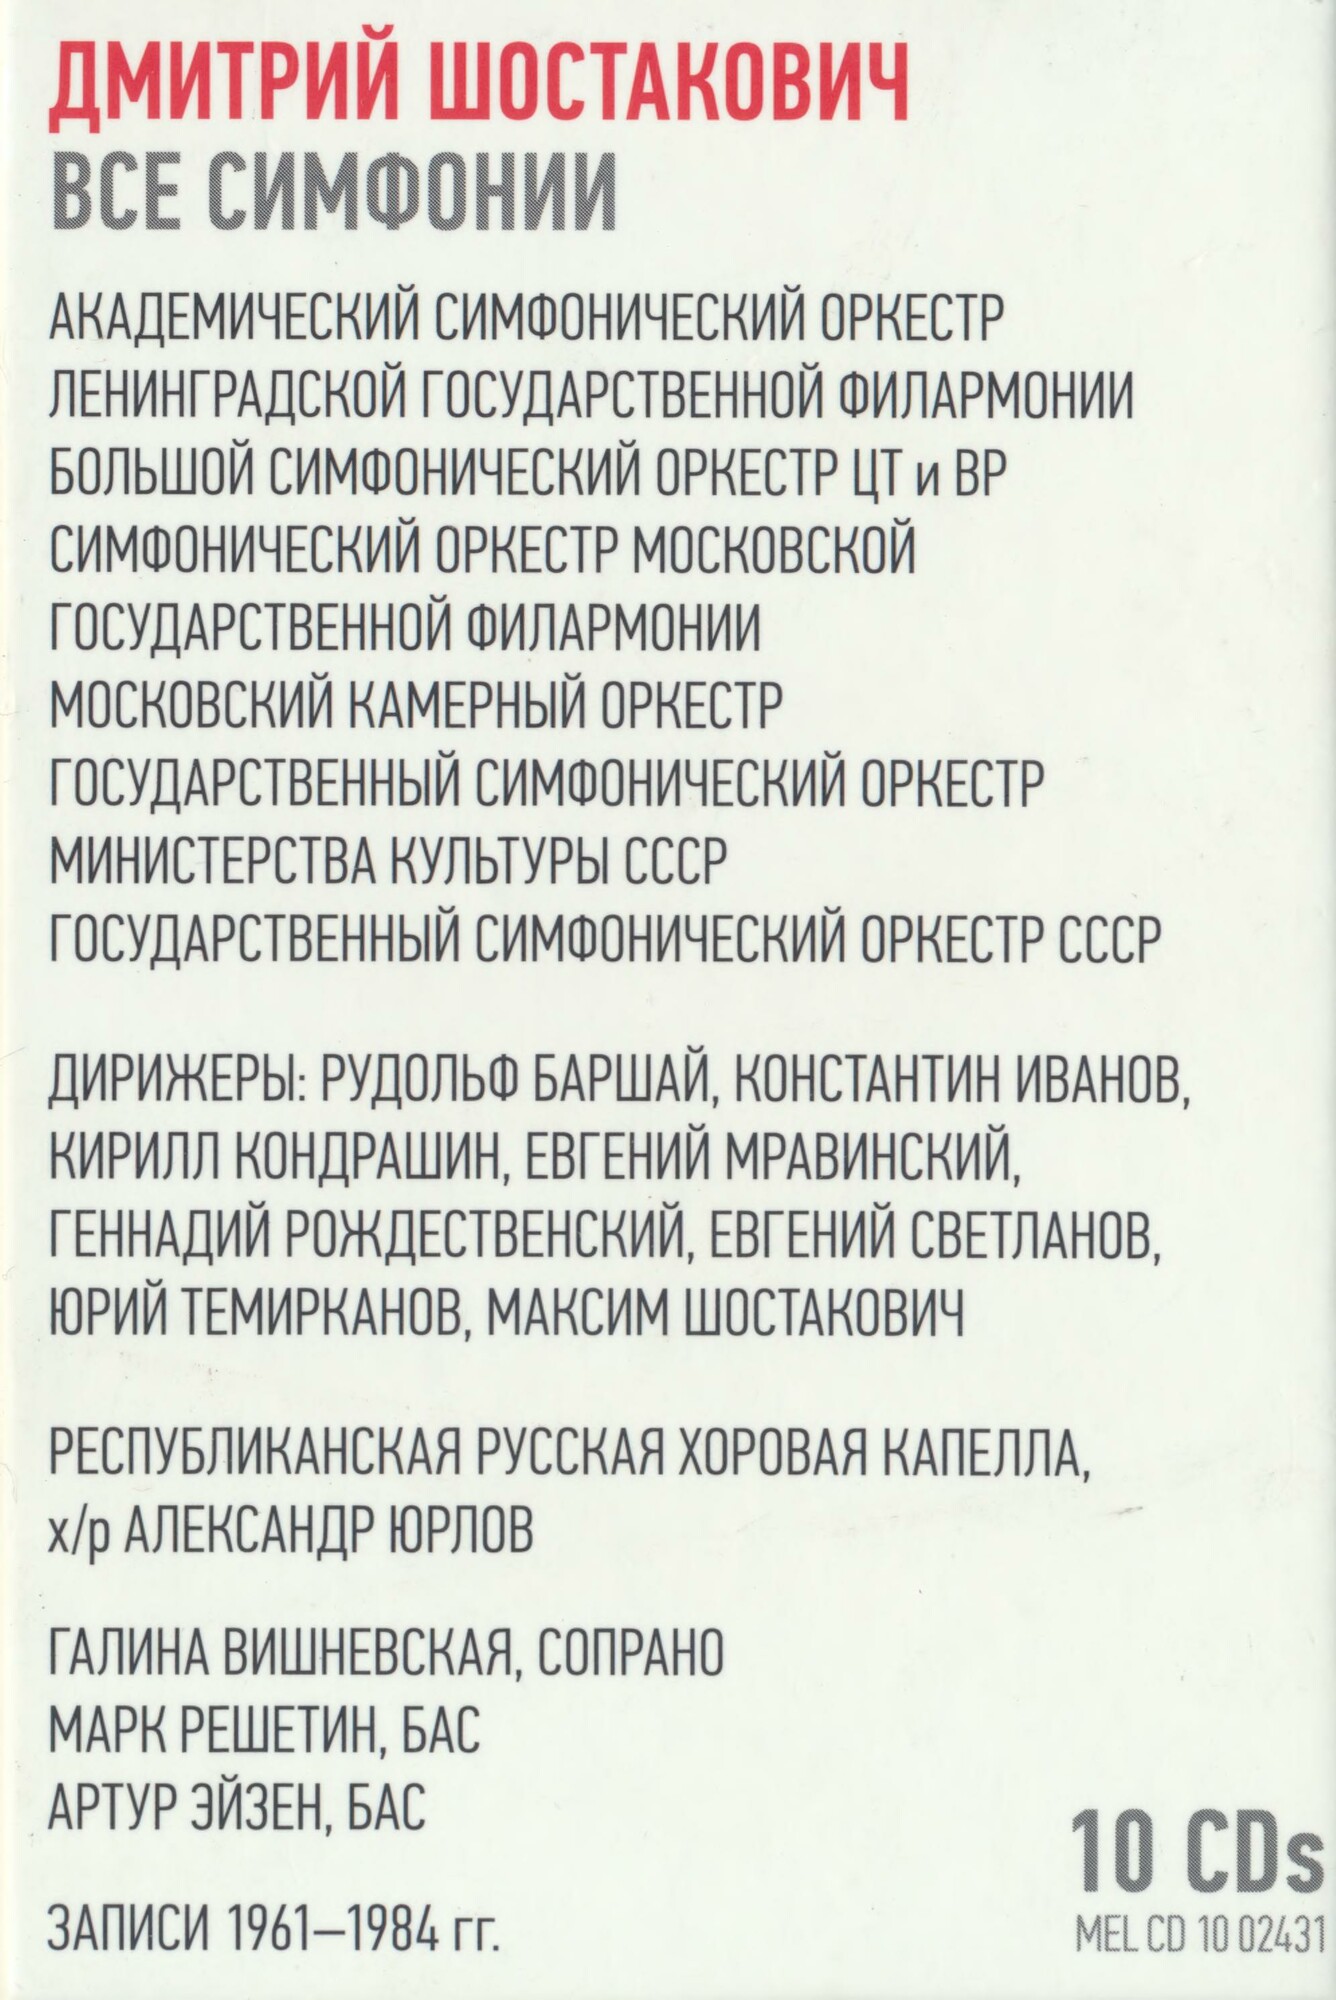 Дмитрий ШОСТАКОВИЧ. Все симфонии (юбилейное издание)